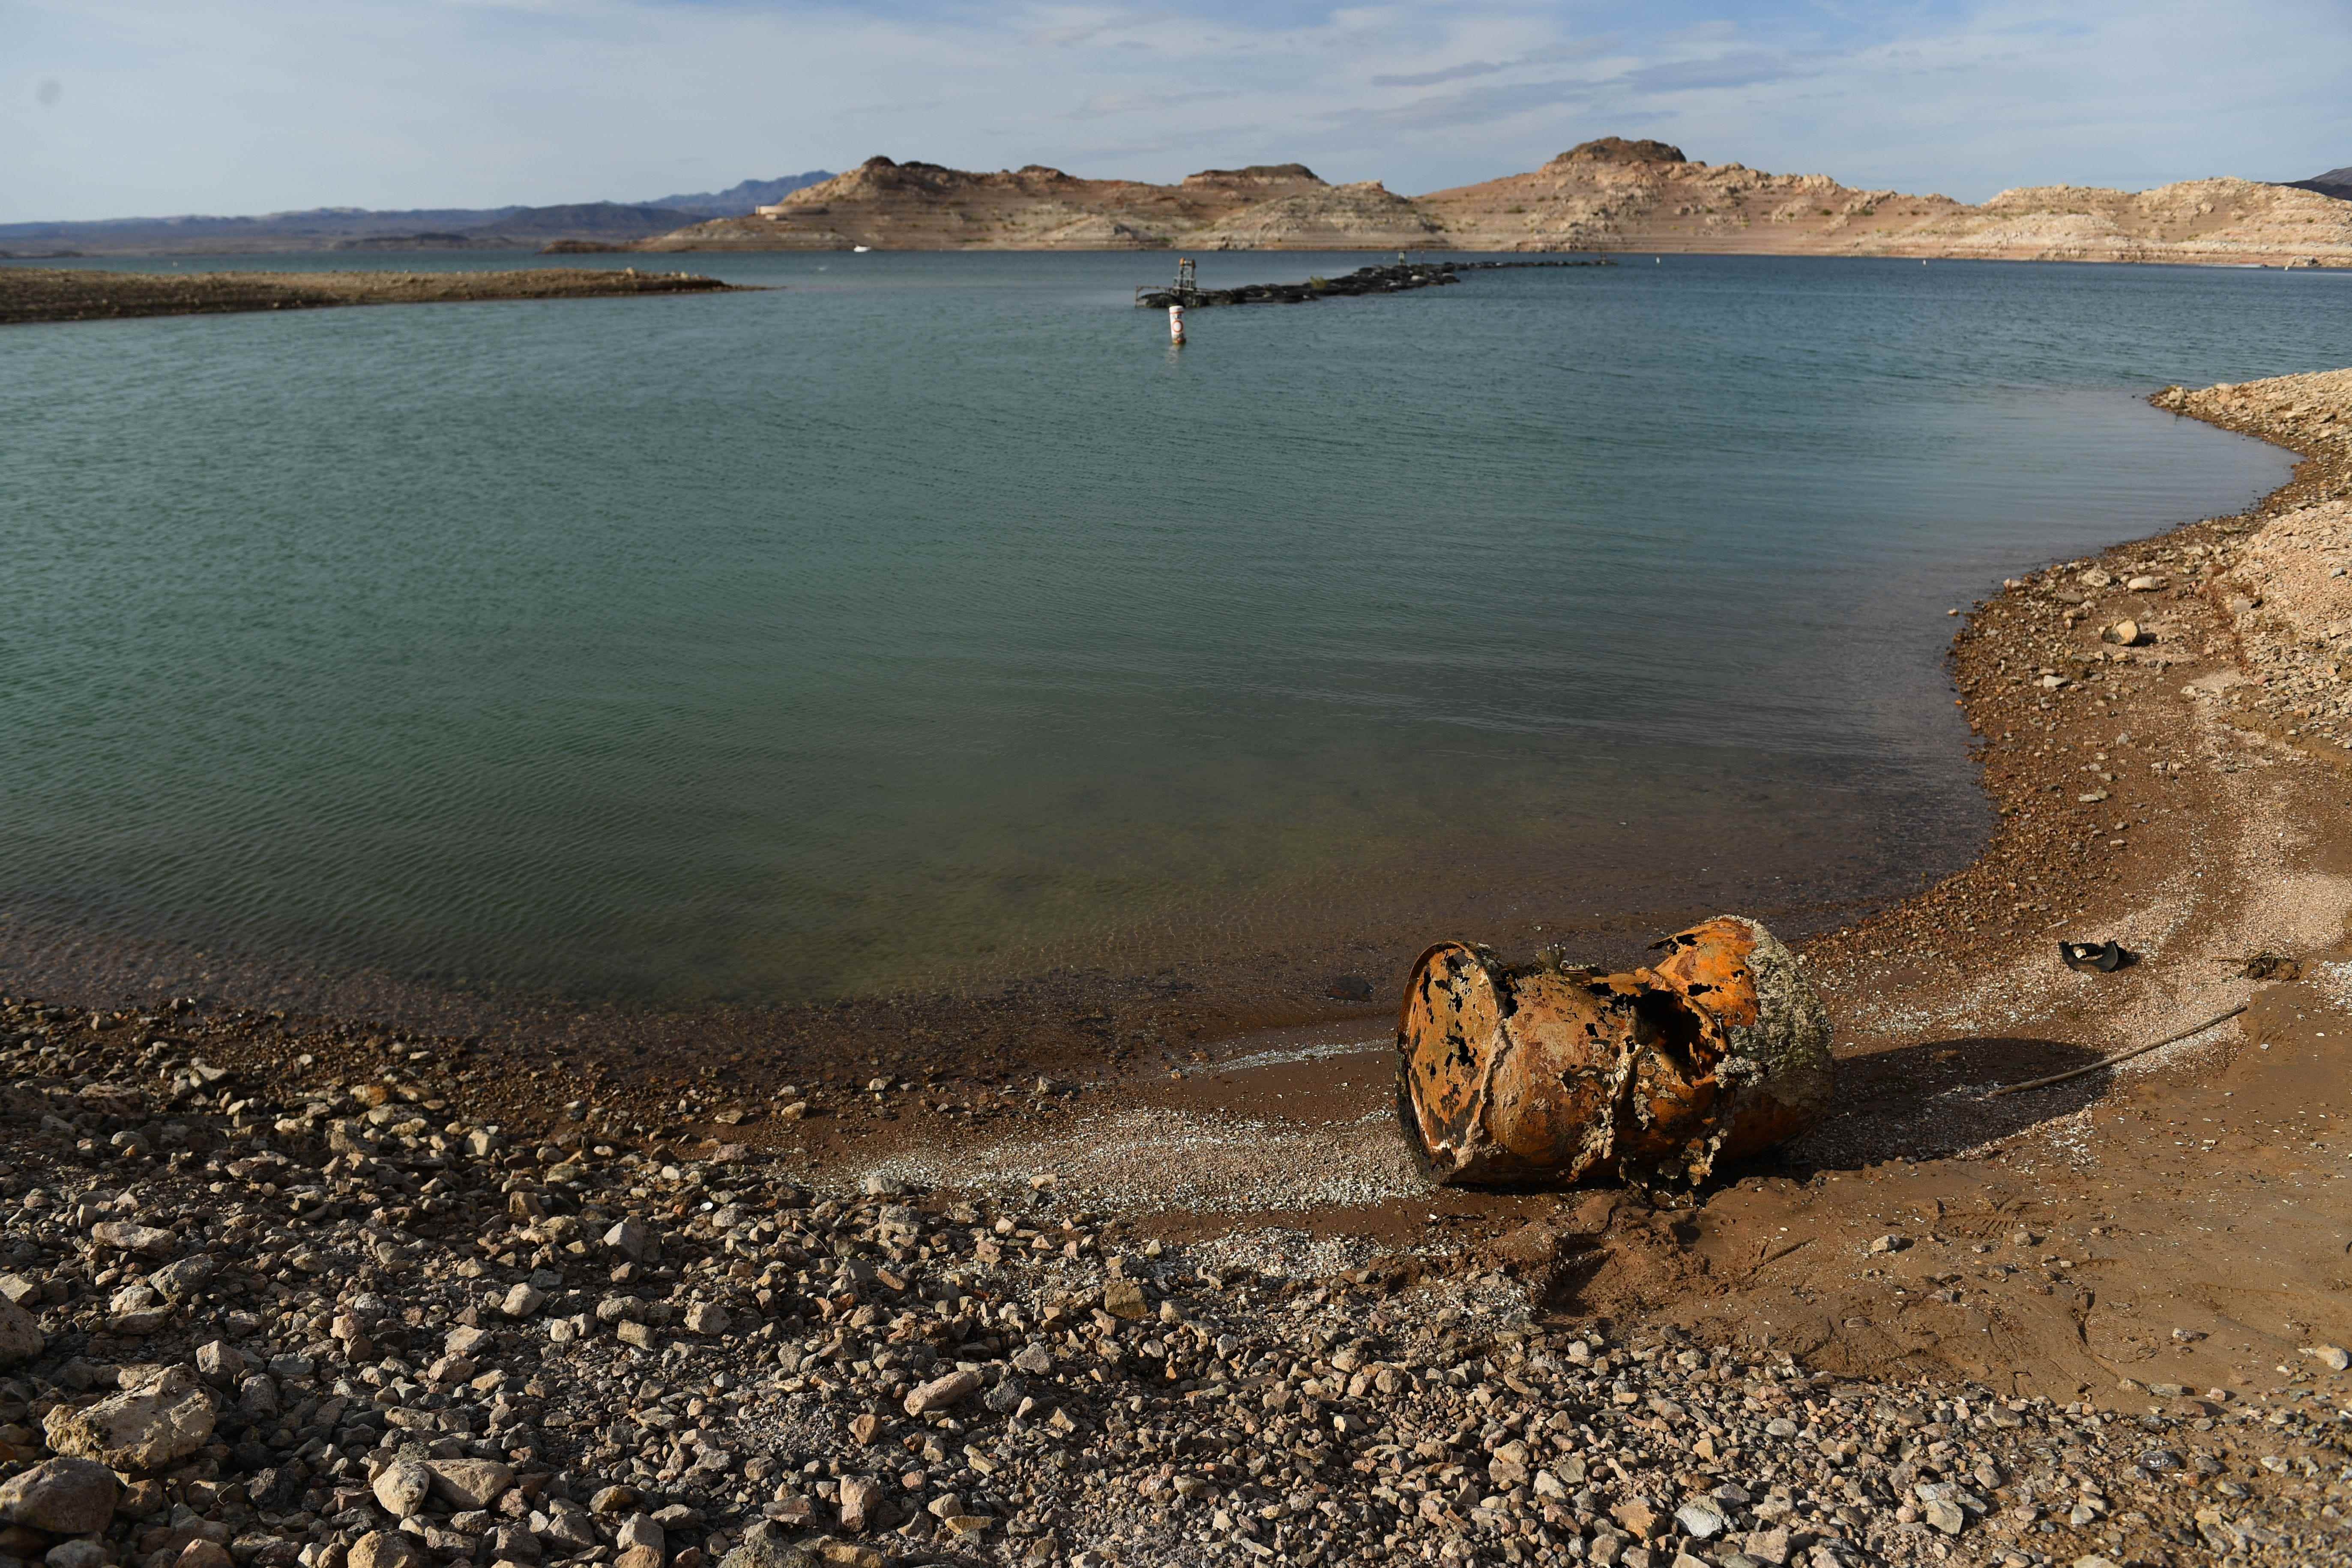 Ein verrostetes Metallfass in der Nähe der Stelle, an der ein anderes Fass mit einem menschlichen Körper gefunden wurde, liegt bei niedrigem Wasserstand aufgrund der westlichen Dürre am Lake Mead am 5. Mai 2022 freigelegt am Ufer.